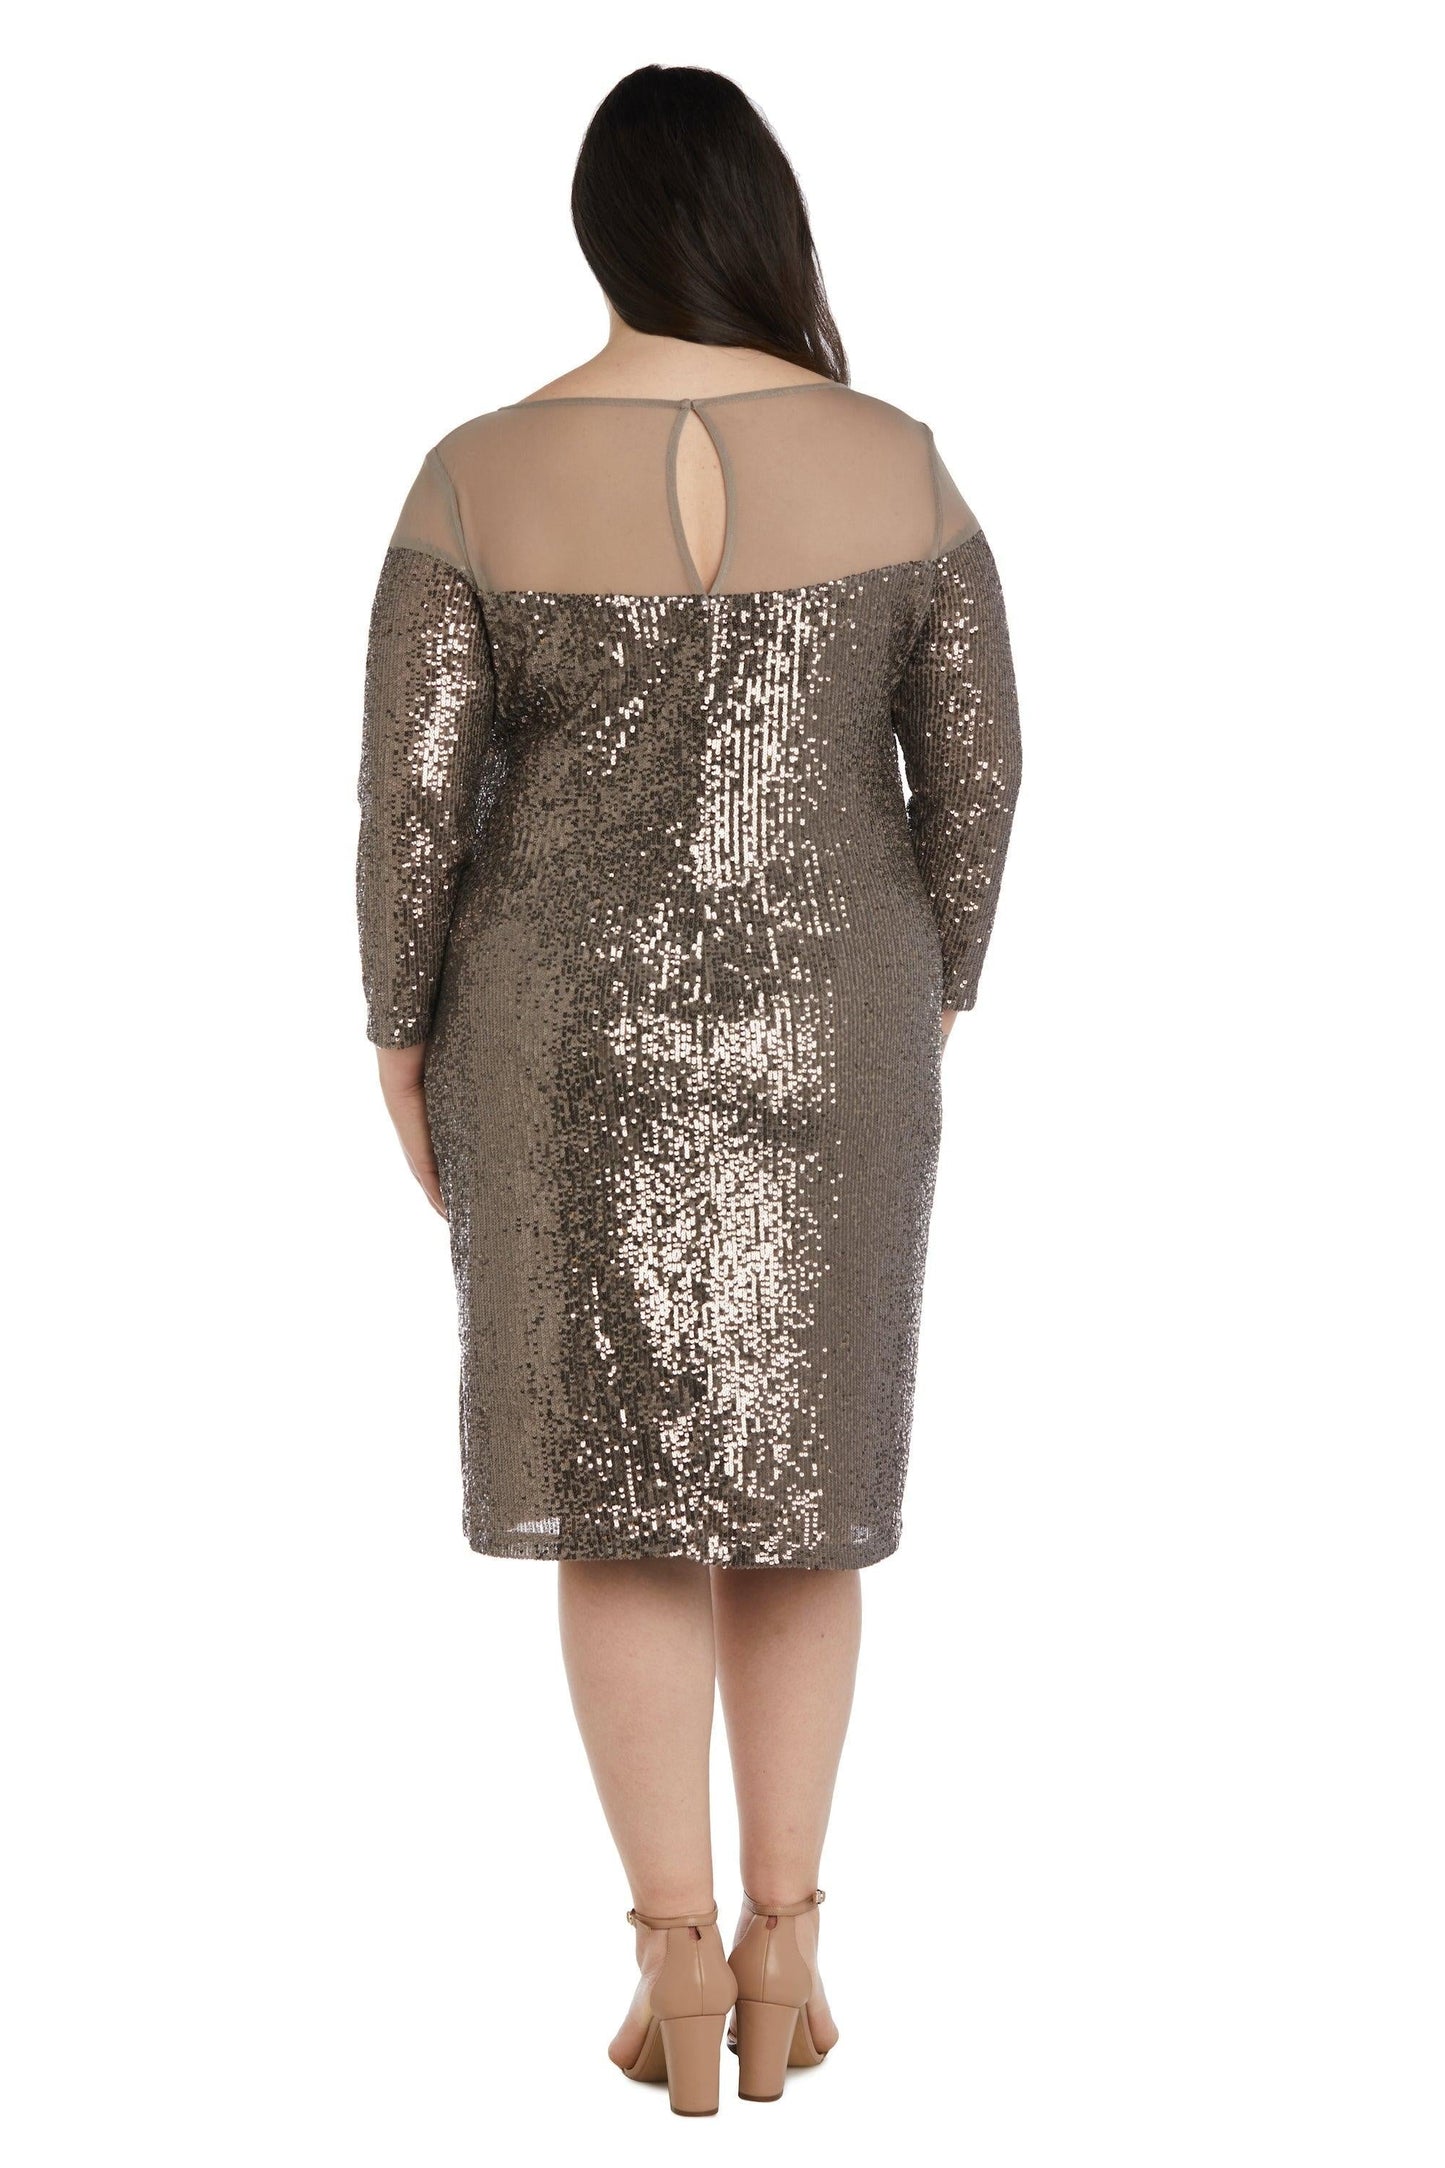 R&M Richards Short Plus Size Dress 2428W - The Dress Outlet